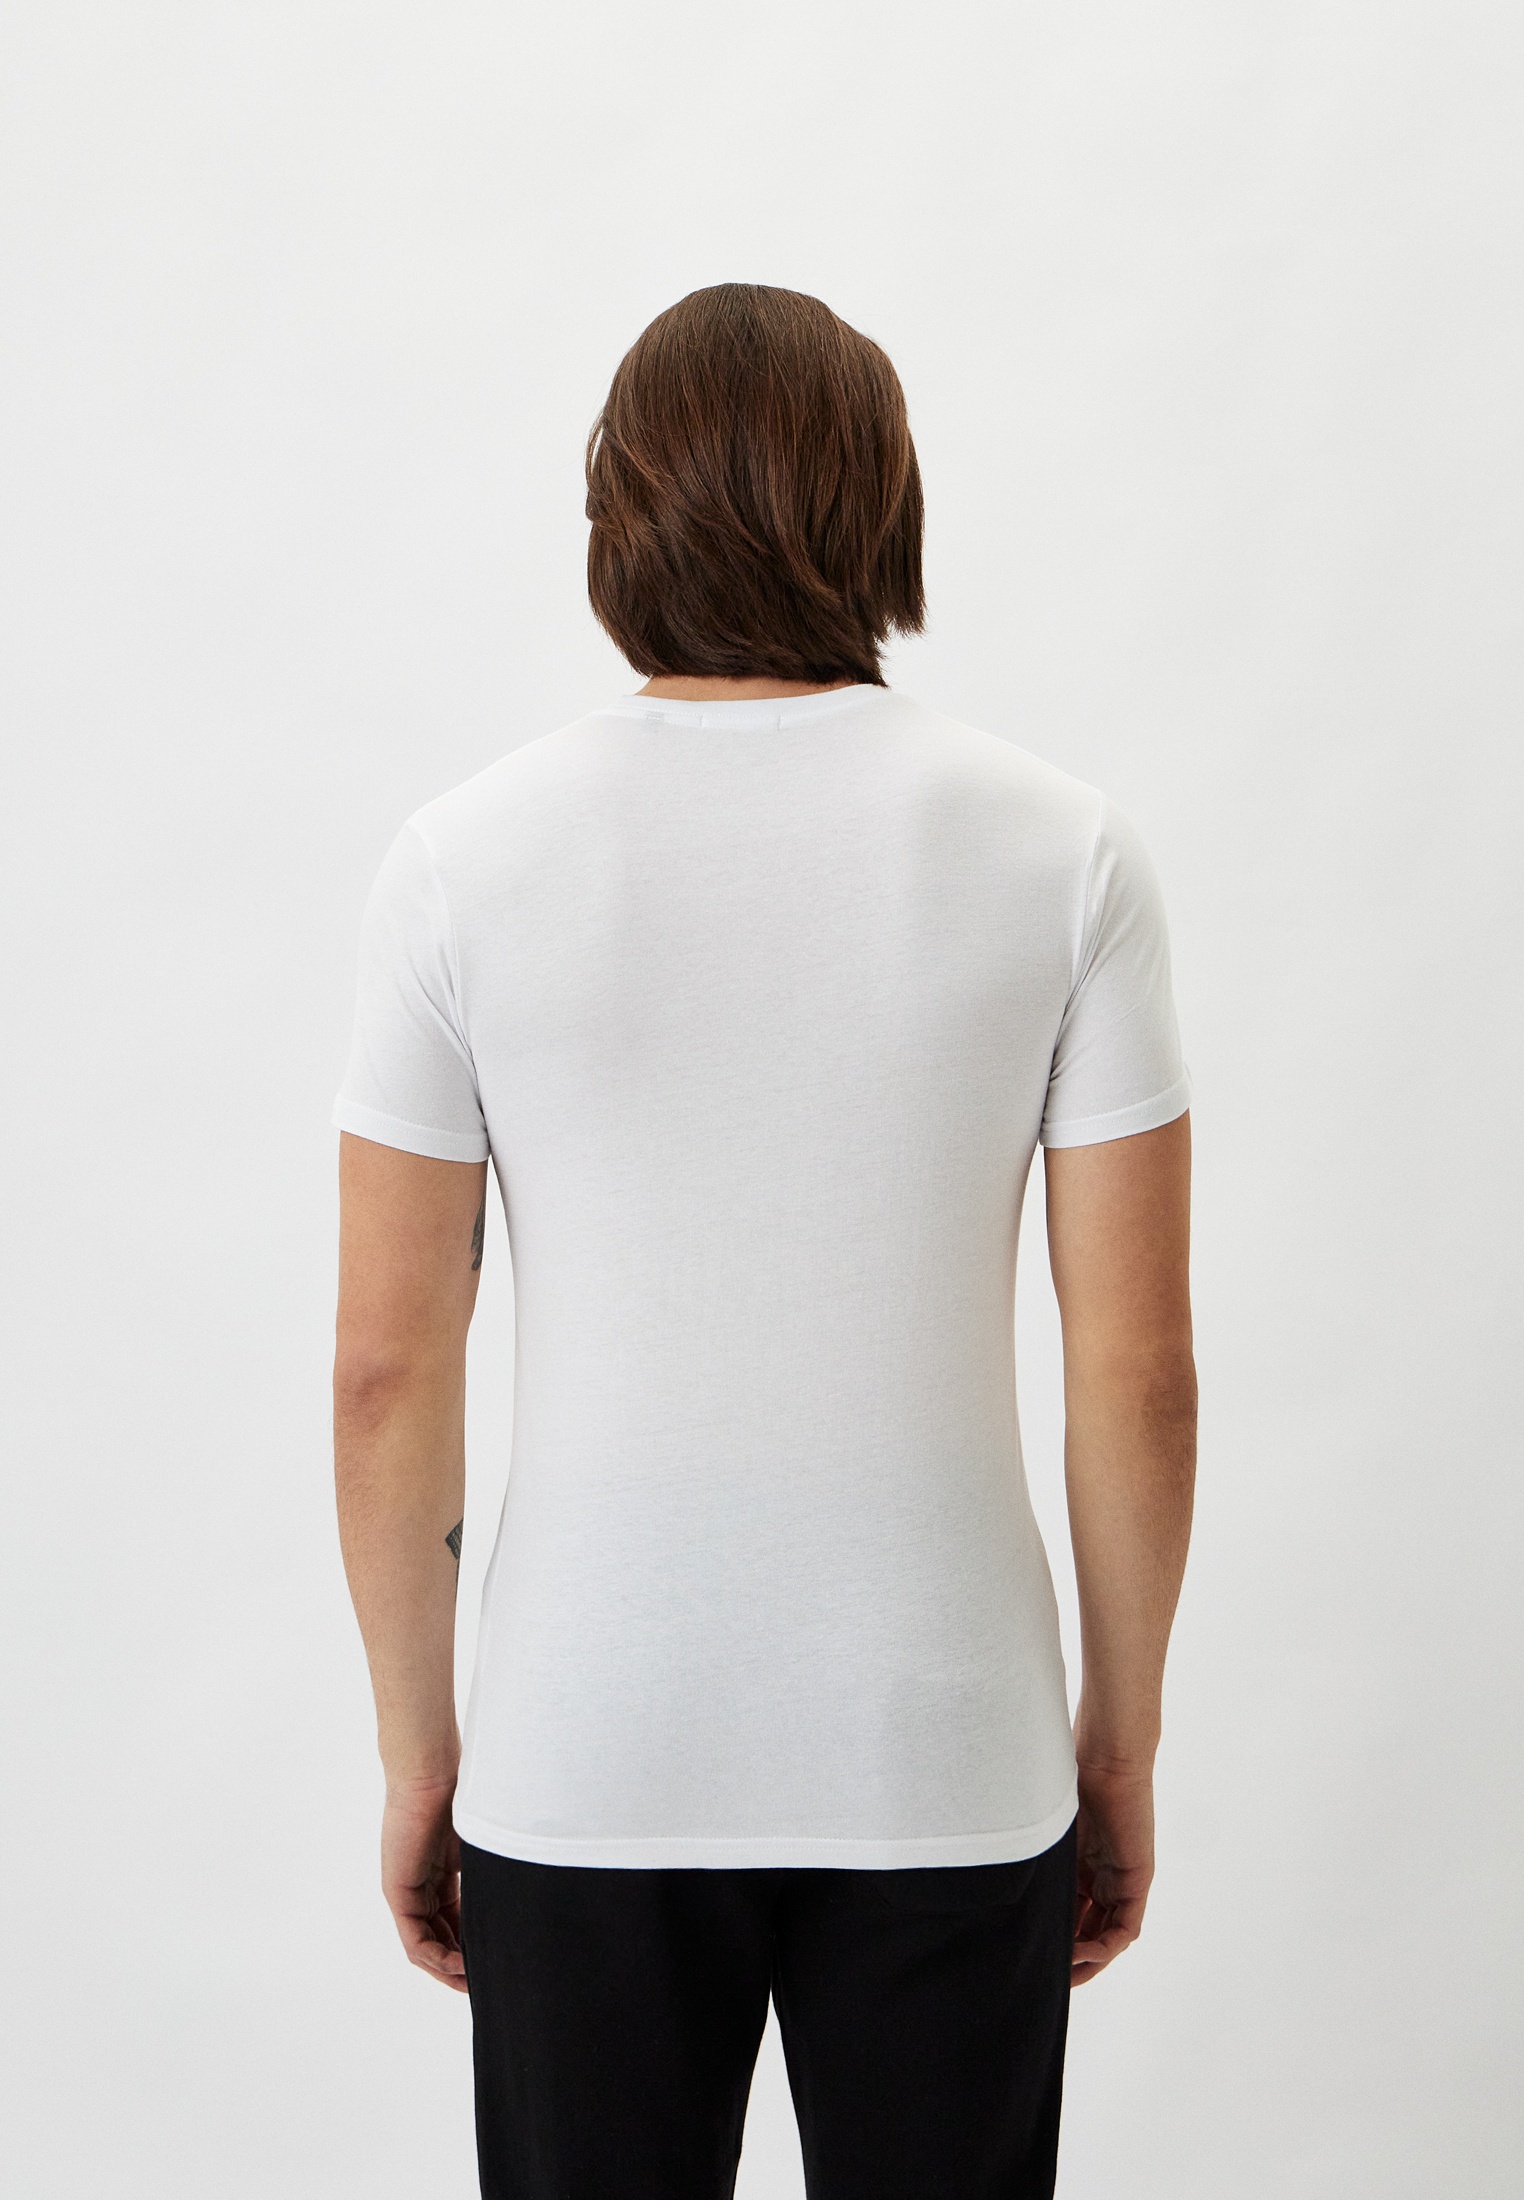 Мужская футболка Baldinini (Балдинини) B-OLM-M001: изображение 3